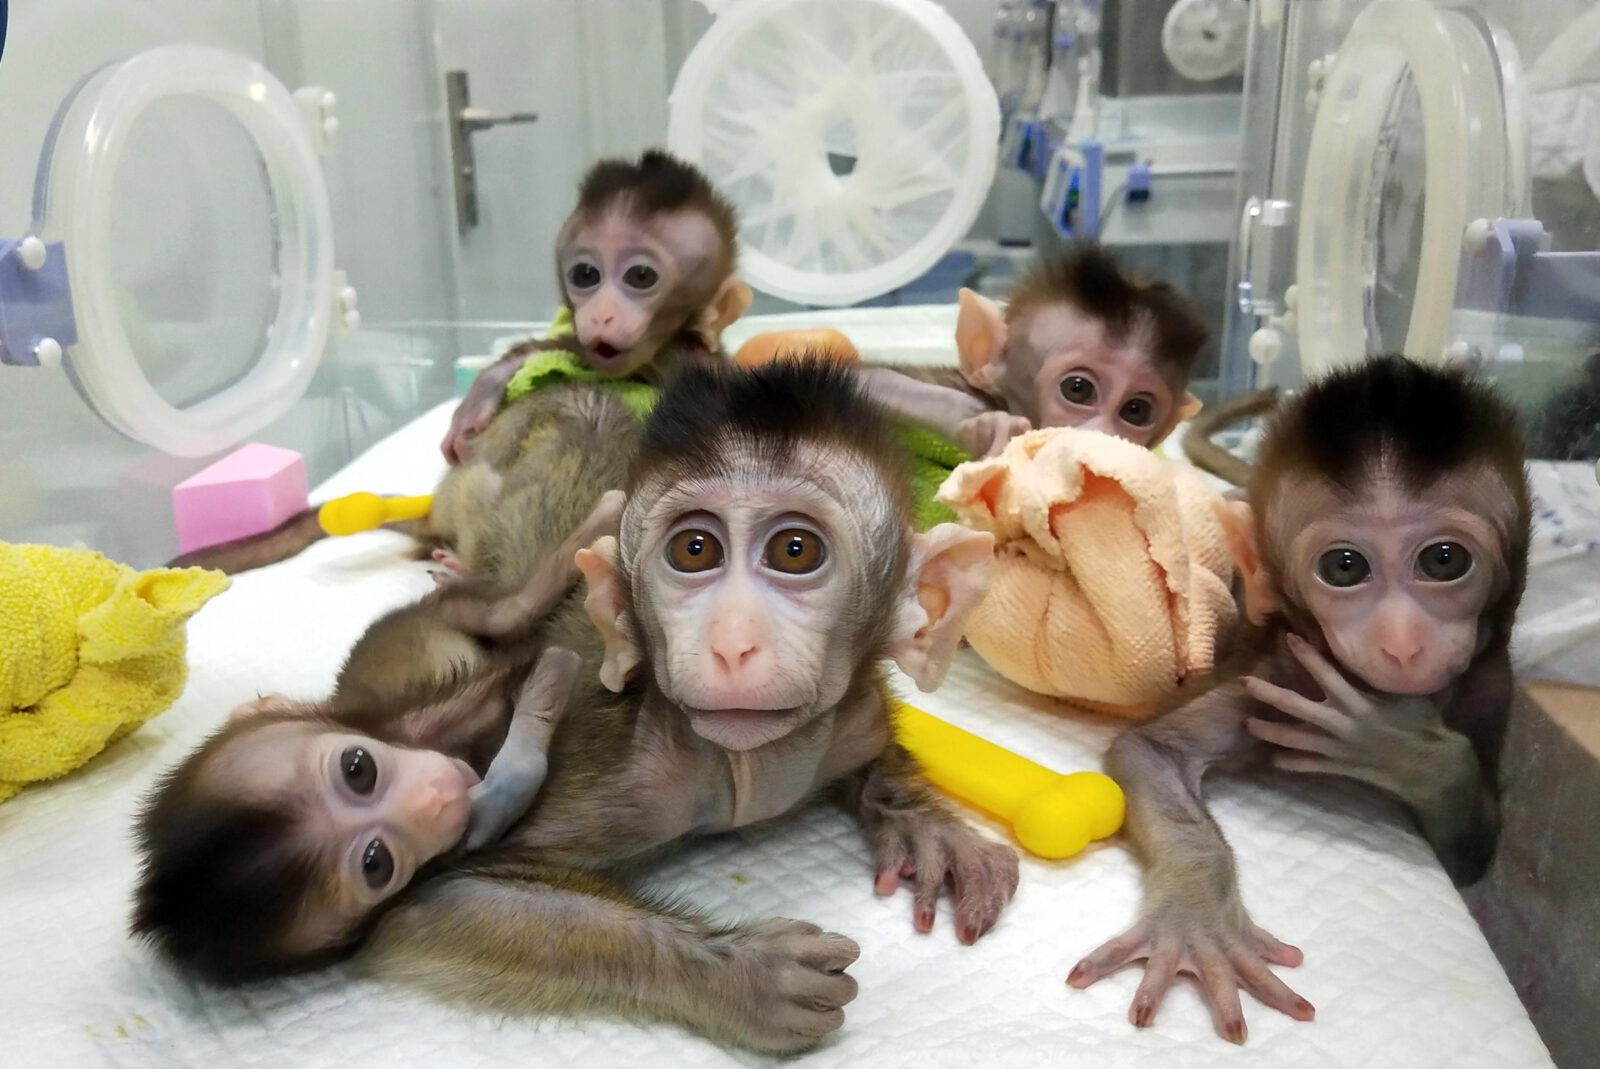 Chińscy naukowcy wszczepili małpom ludzkie geny. „To nie jest dobry kierunek”